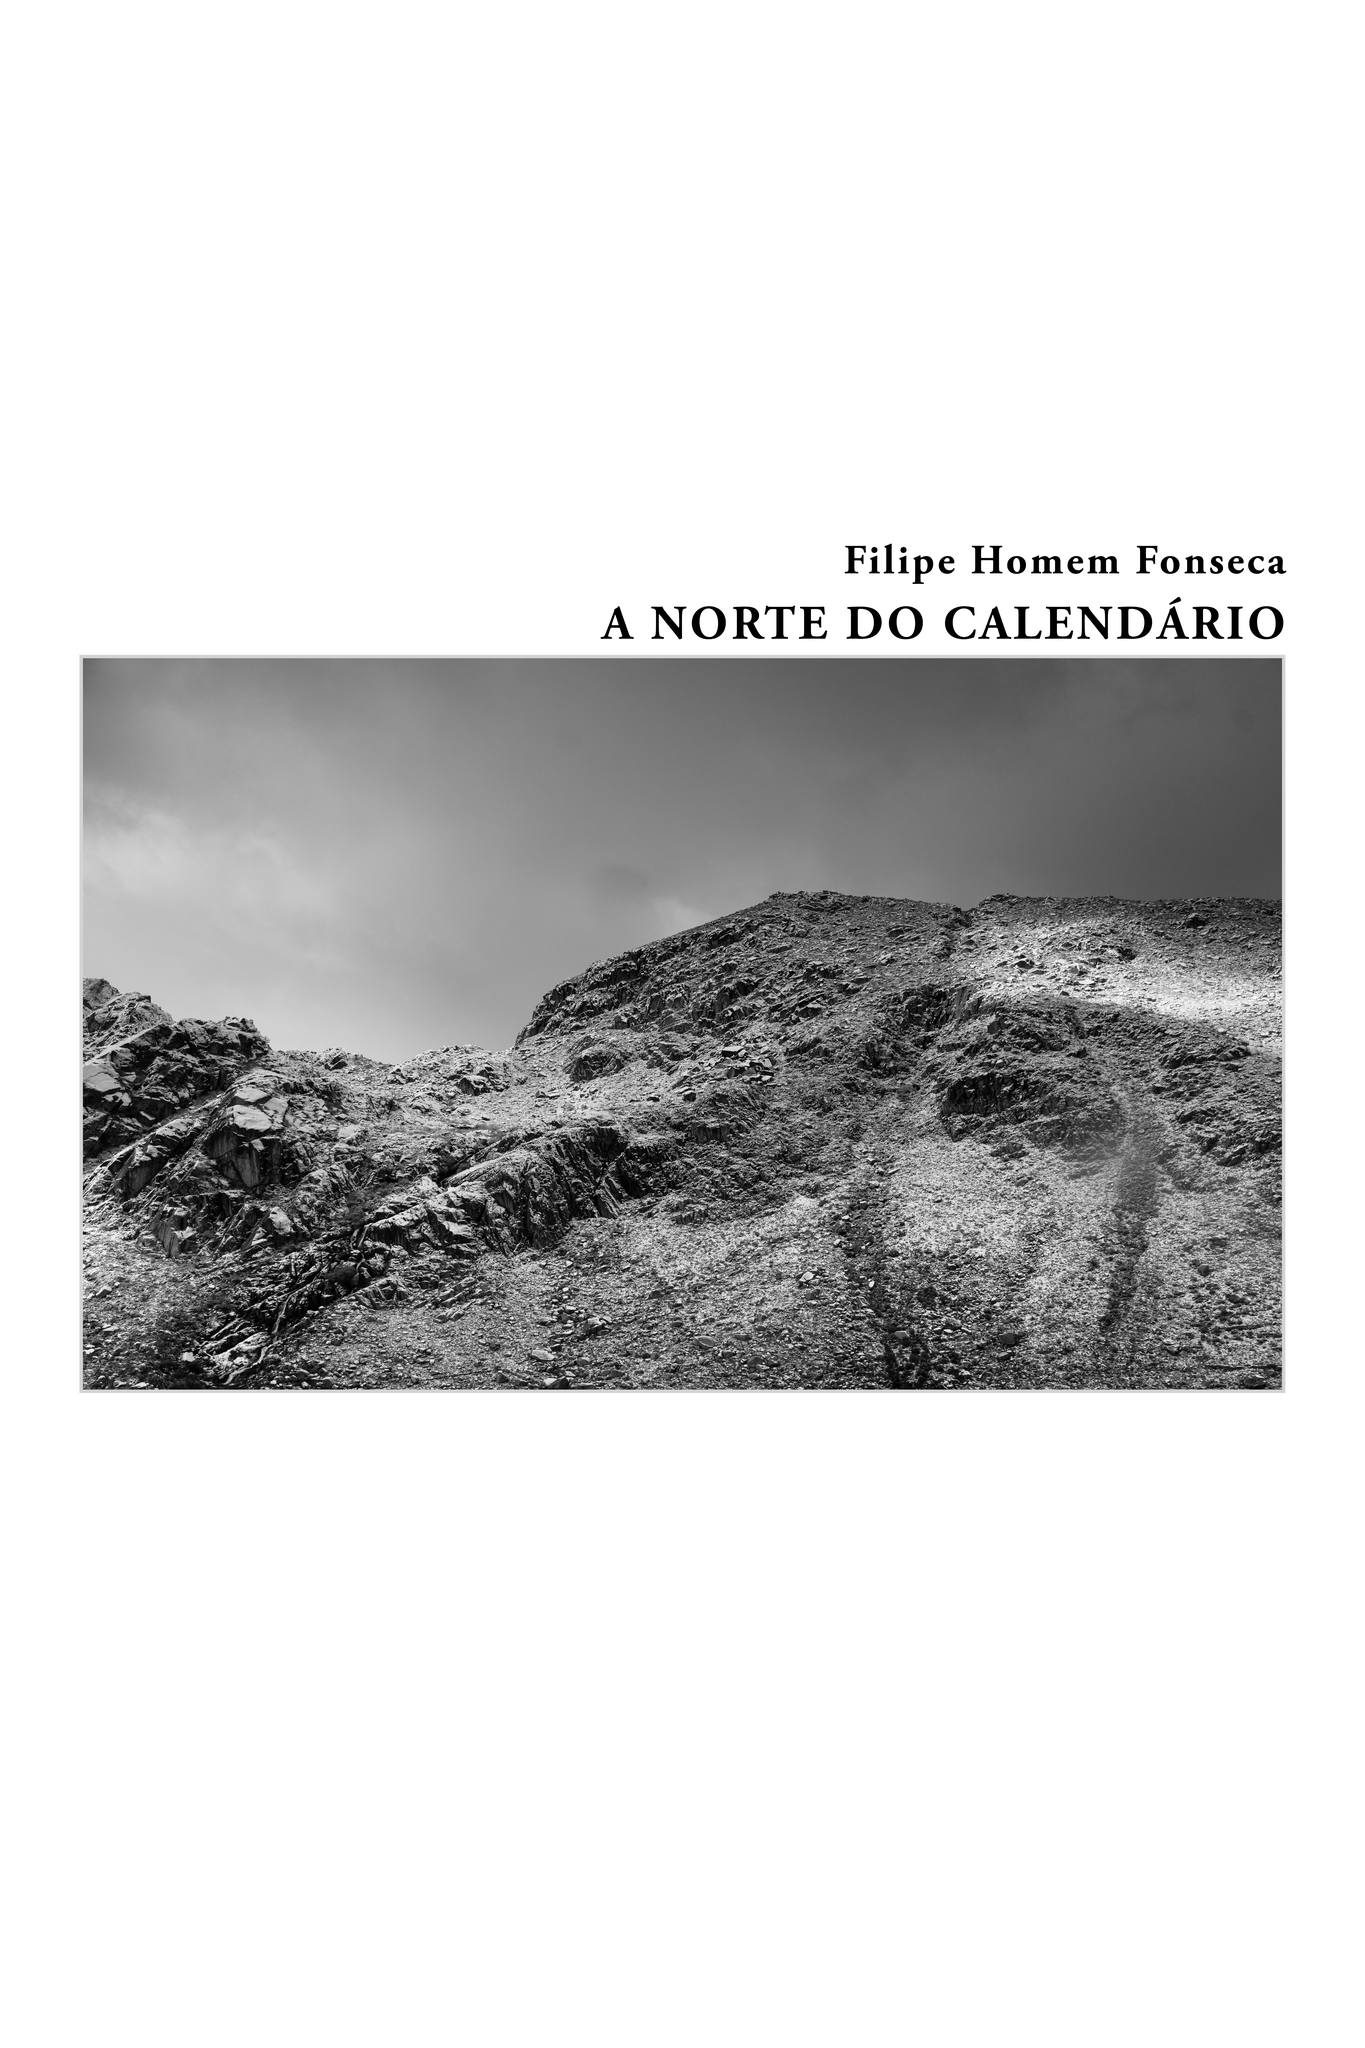 Apresentação de 'A norte do calendário' de Filipe Homem Fonseca